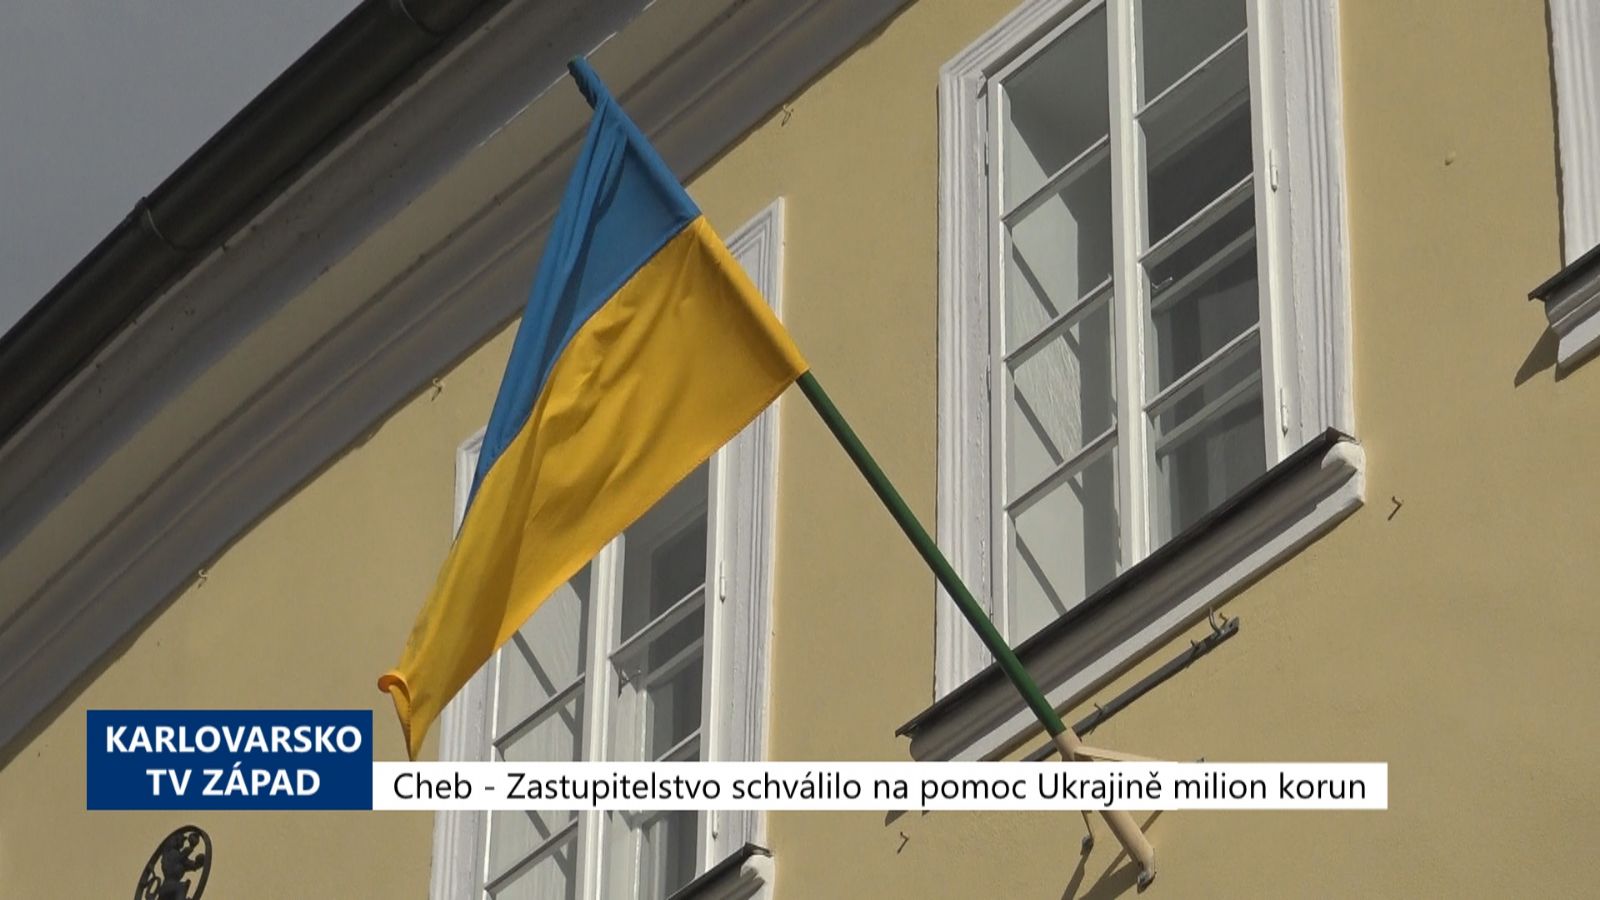 Cheb: Zastupitelstvo schválilo na pomoc Ukrajině milion korun (TV Západ)